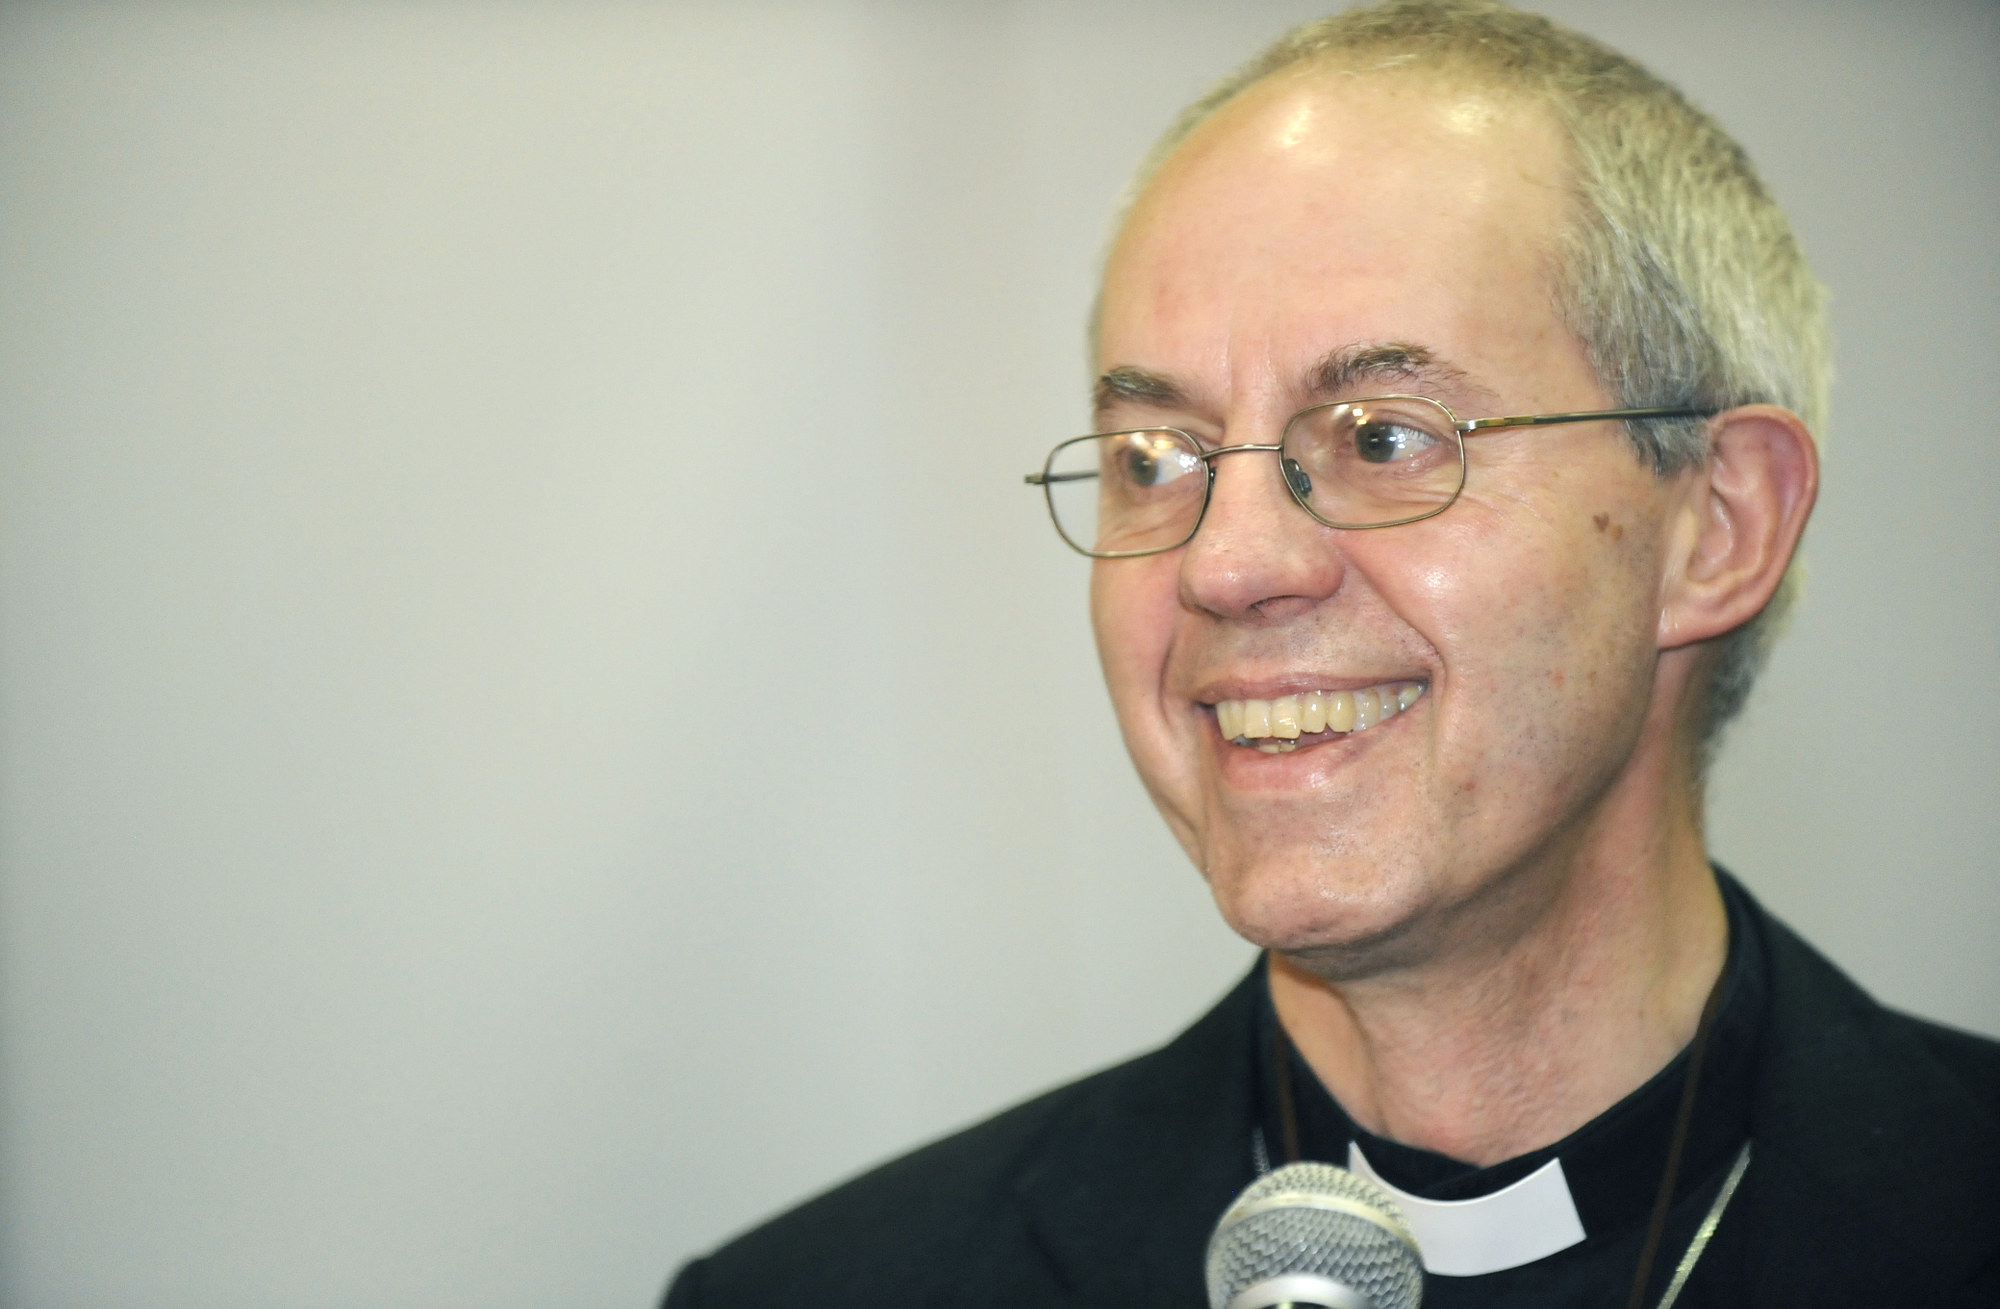 Image - Krisentreffen der Anglikaner – Erzbischof von Canterbury berät mit Oberhäuptern aller Kirchenprovinzen über Kurs der anglikanischen Konfessionsfamilie